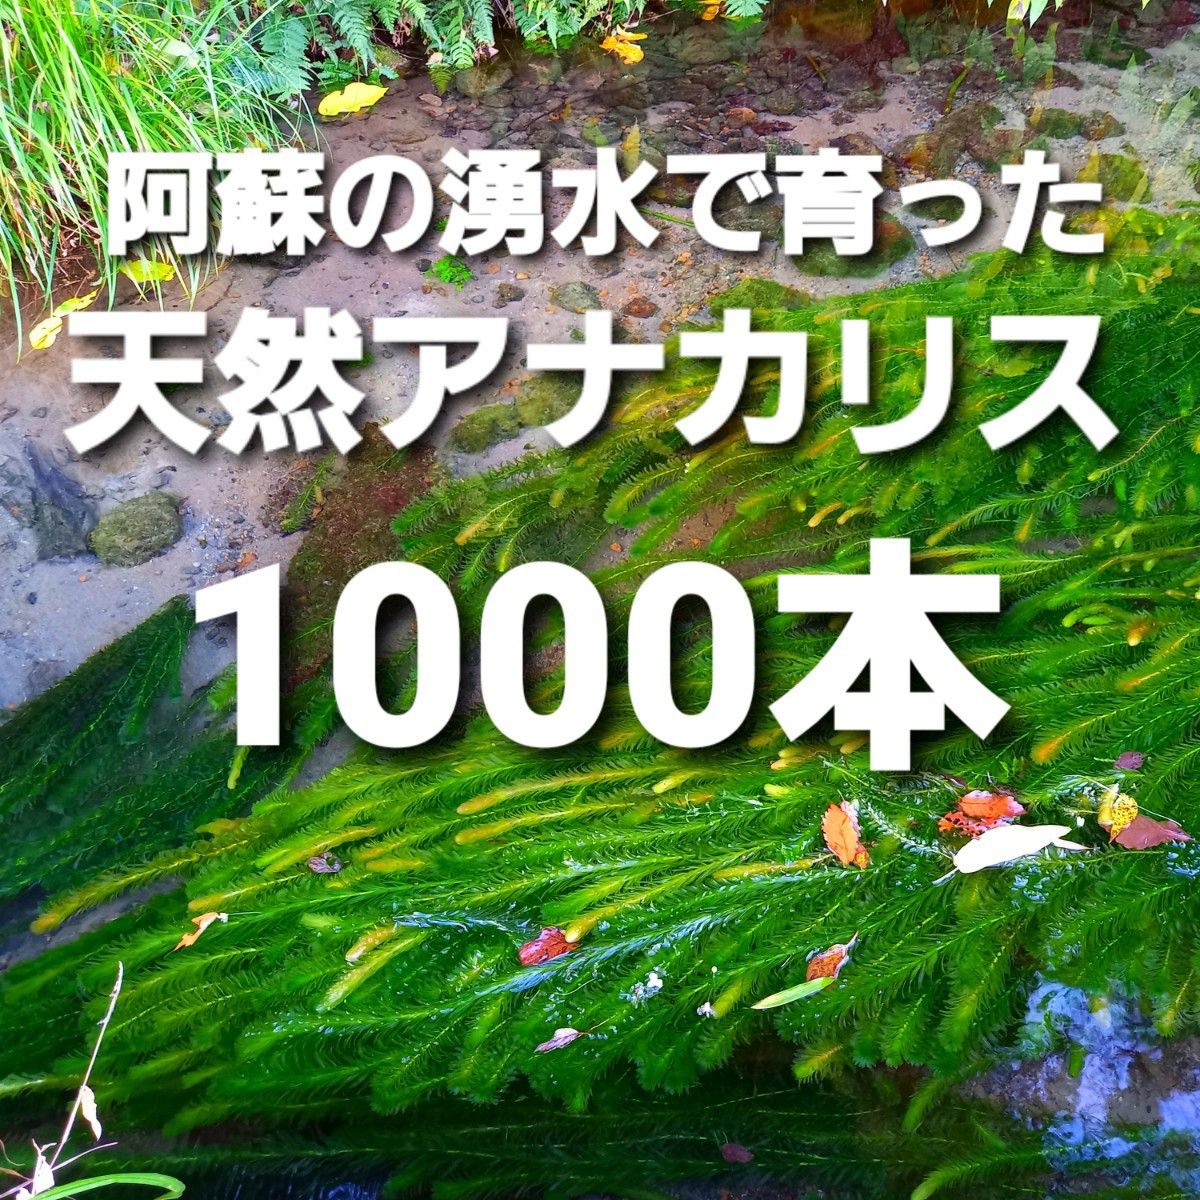 1000本以上 阿蘇の湧水で育った水草 天然アナカリス